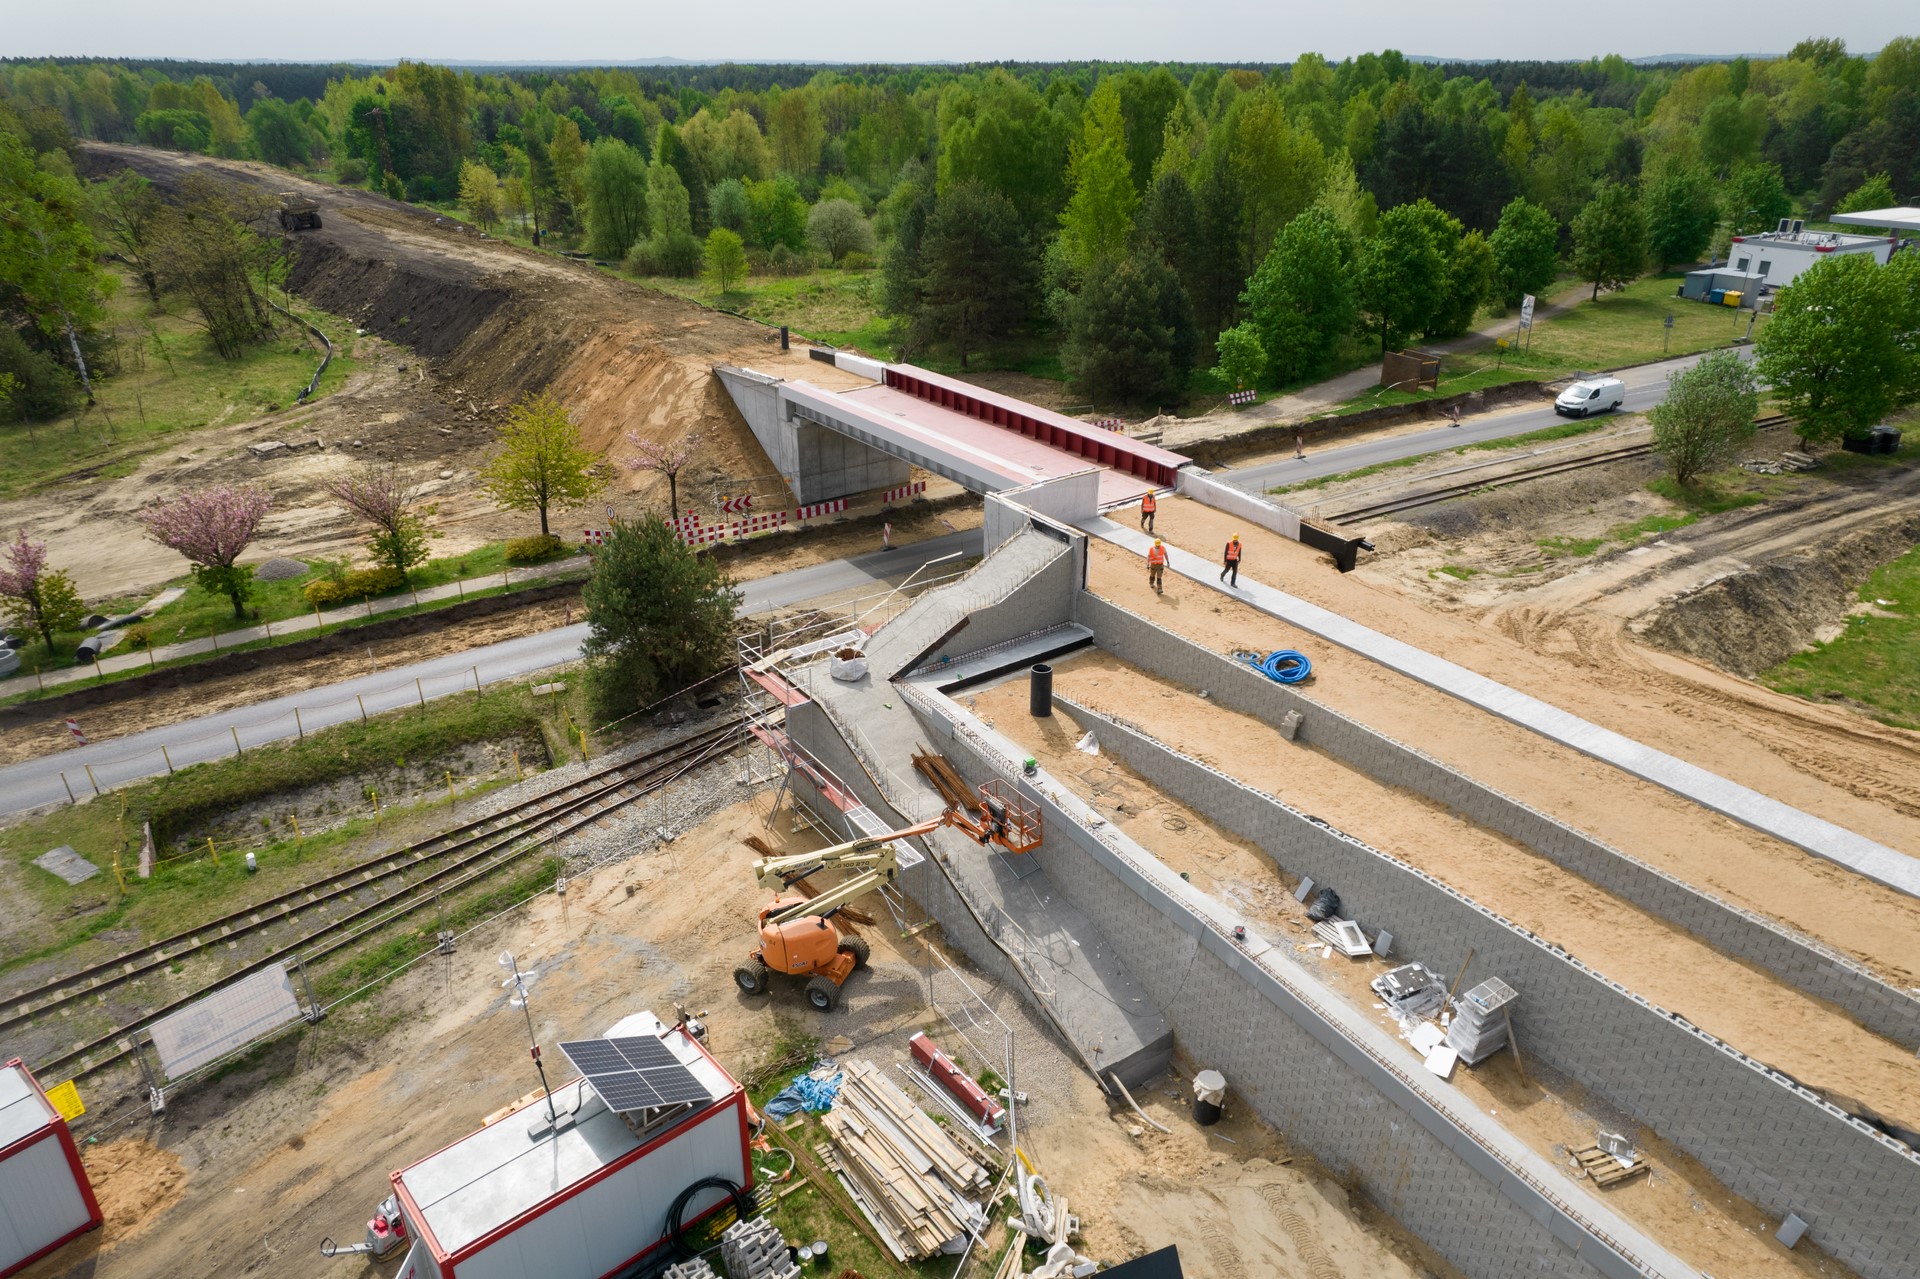 Zdjęcie przedstawia nowo wybudowany wiadukt kolejowy w Miasteczku Śląskim.